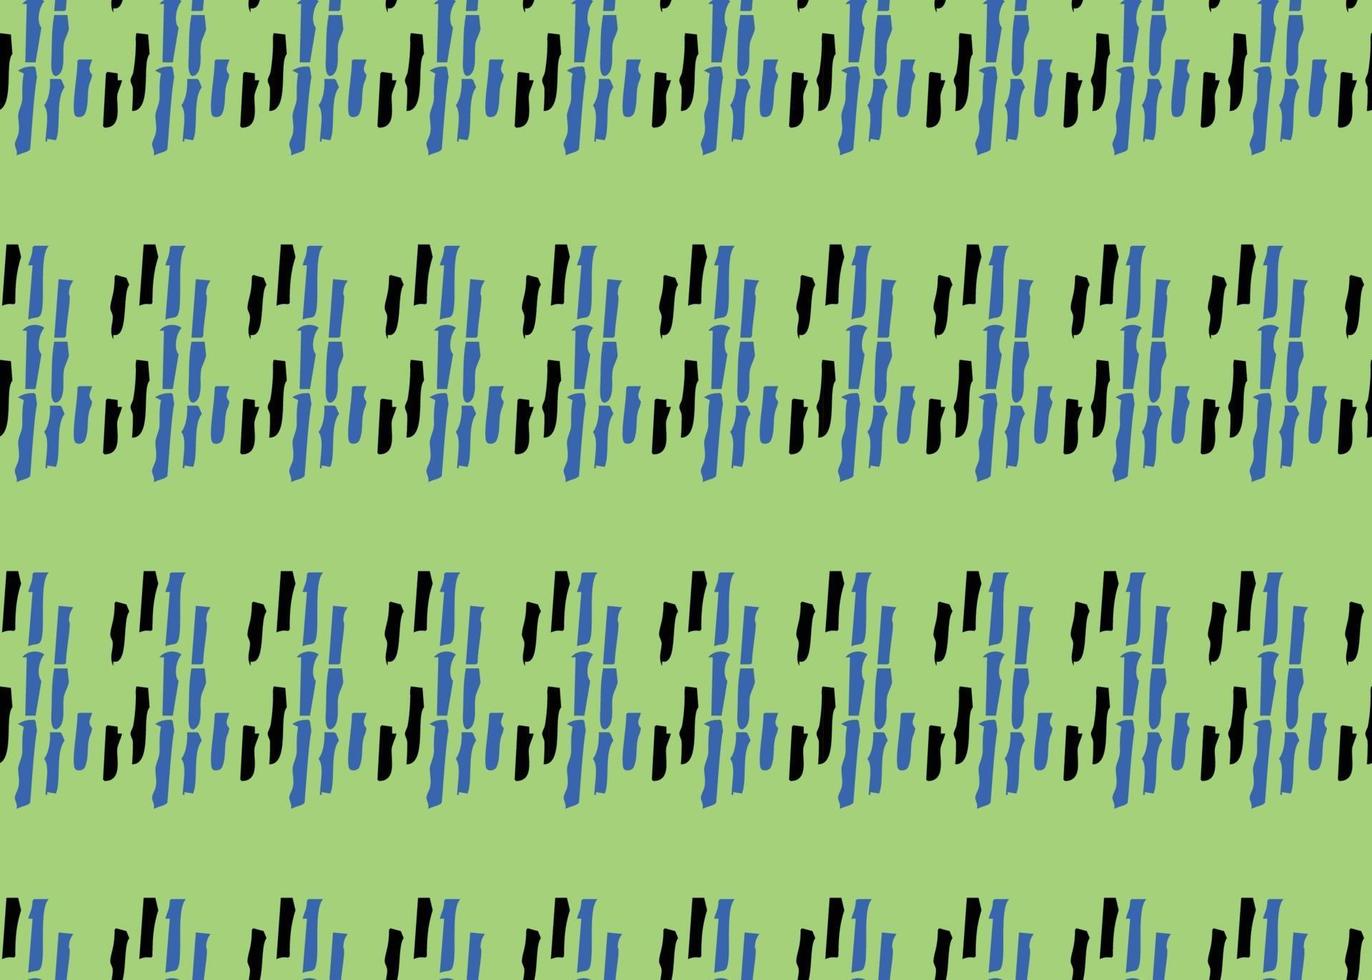 Vektor Textur Hintergrund, nahtloses Muster. handgezeichnete, blaue, schwarze, grüne Farben.